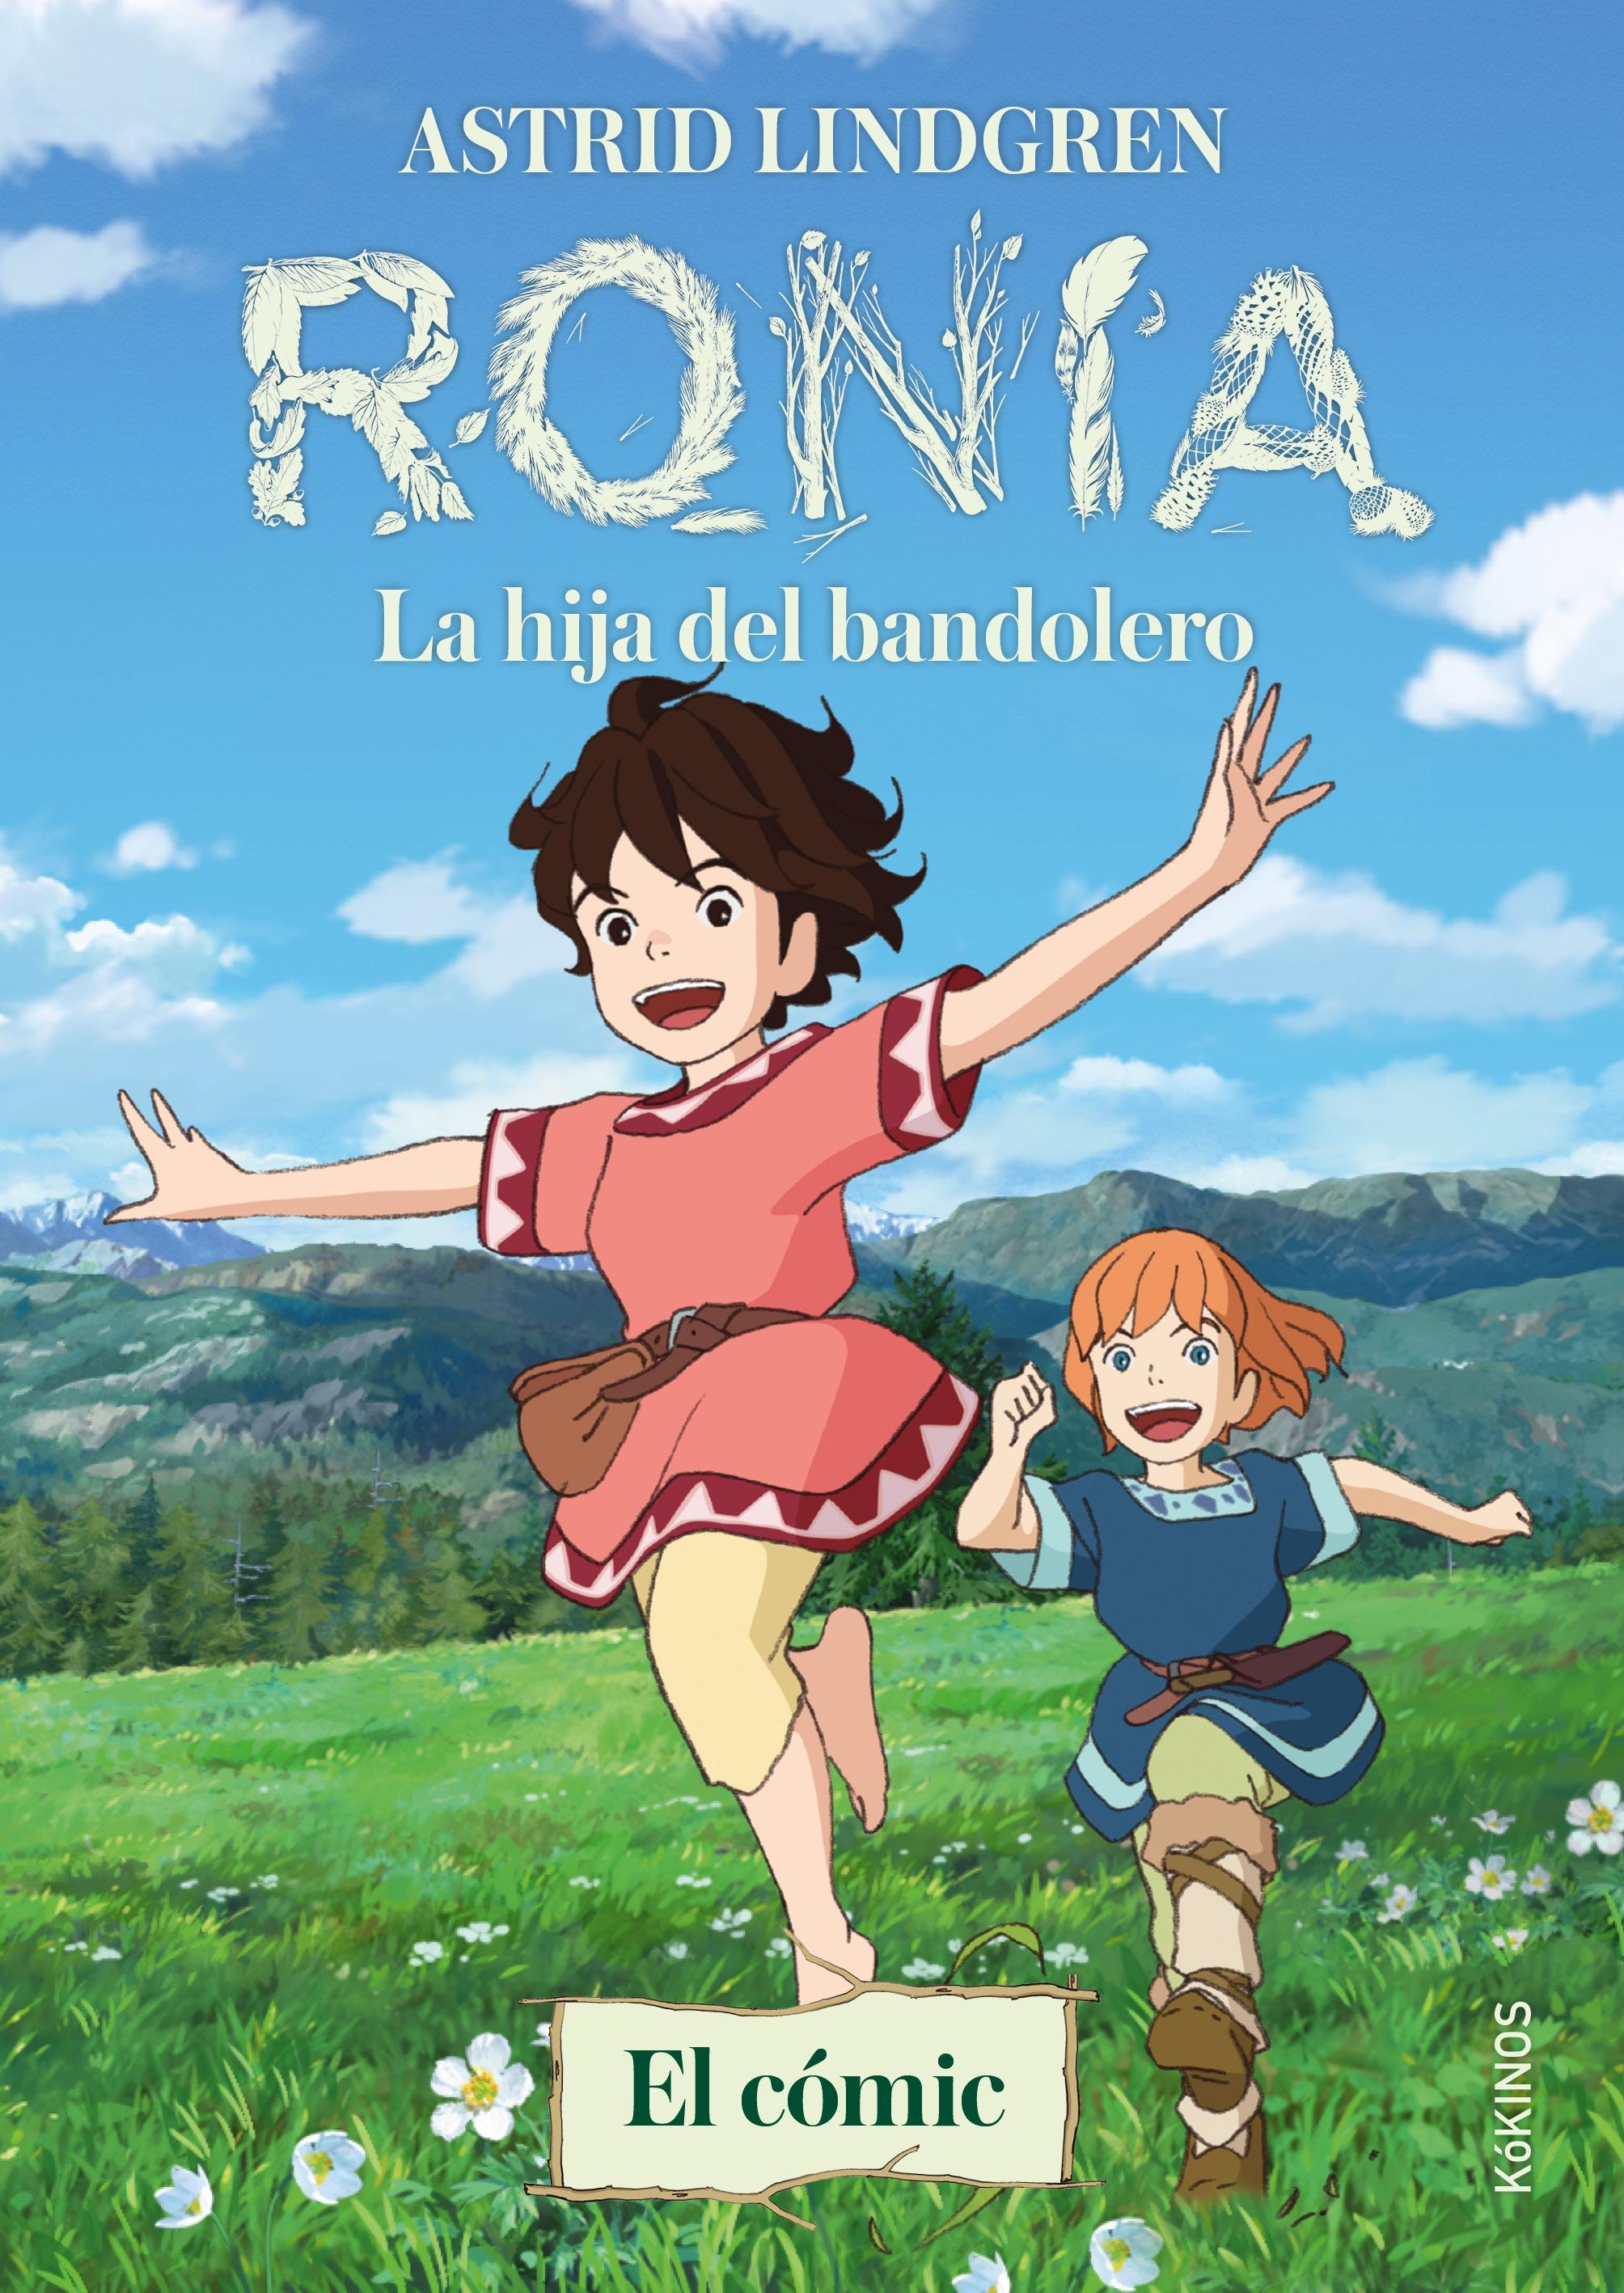 Ronia. "La Hija del Bandolero (El Cómic)". 